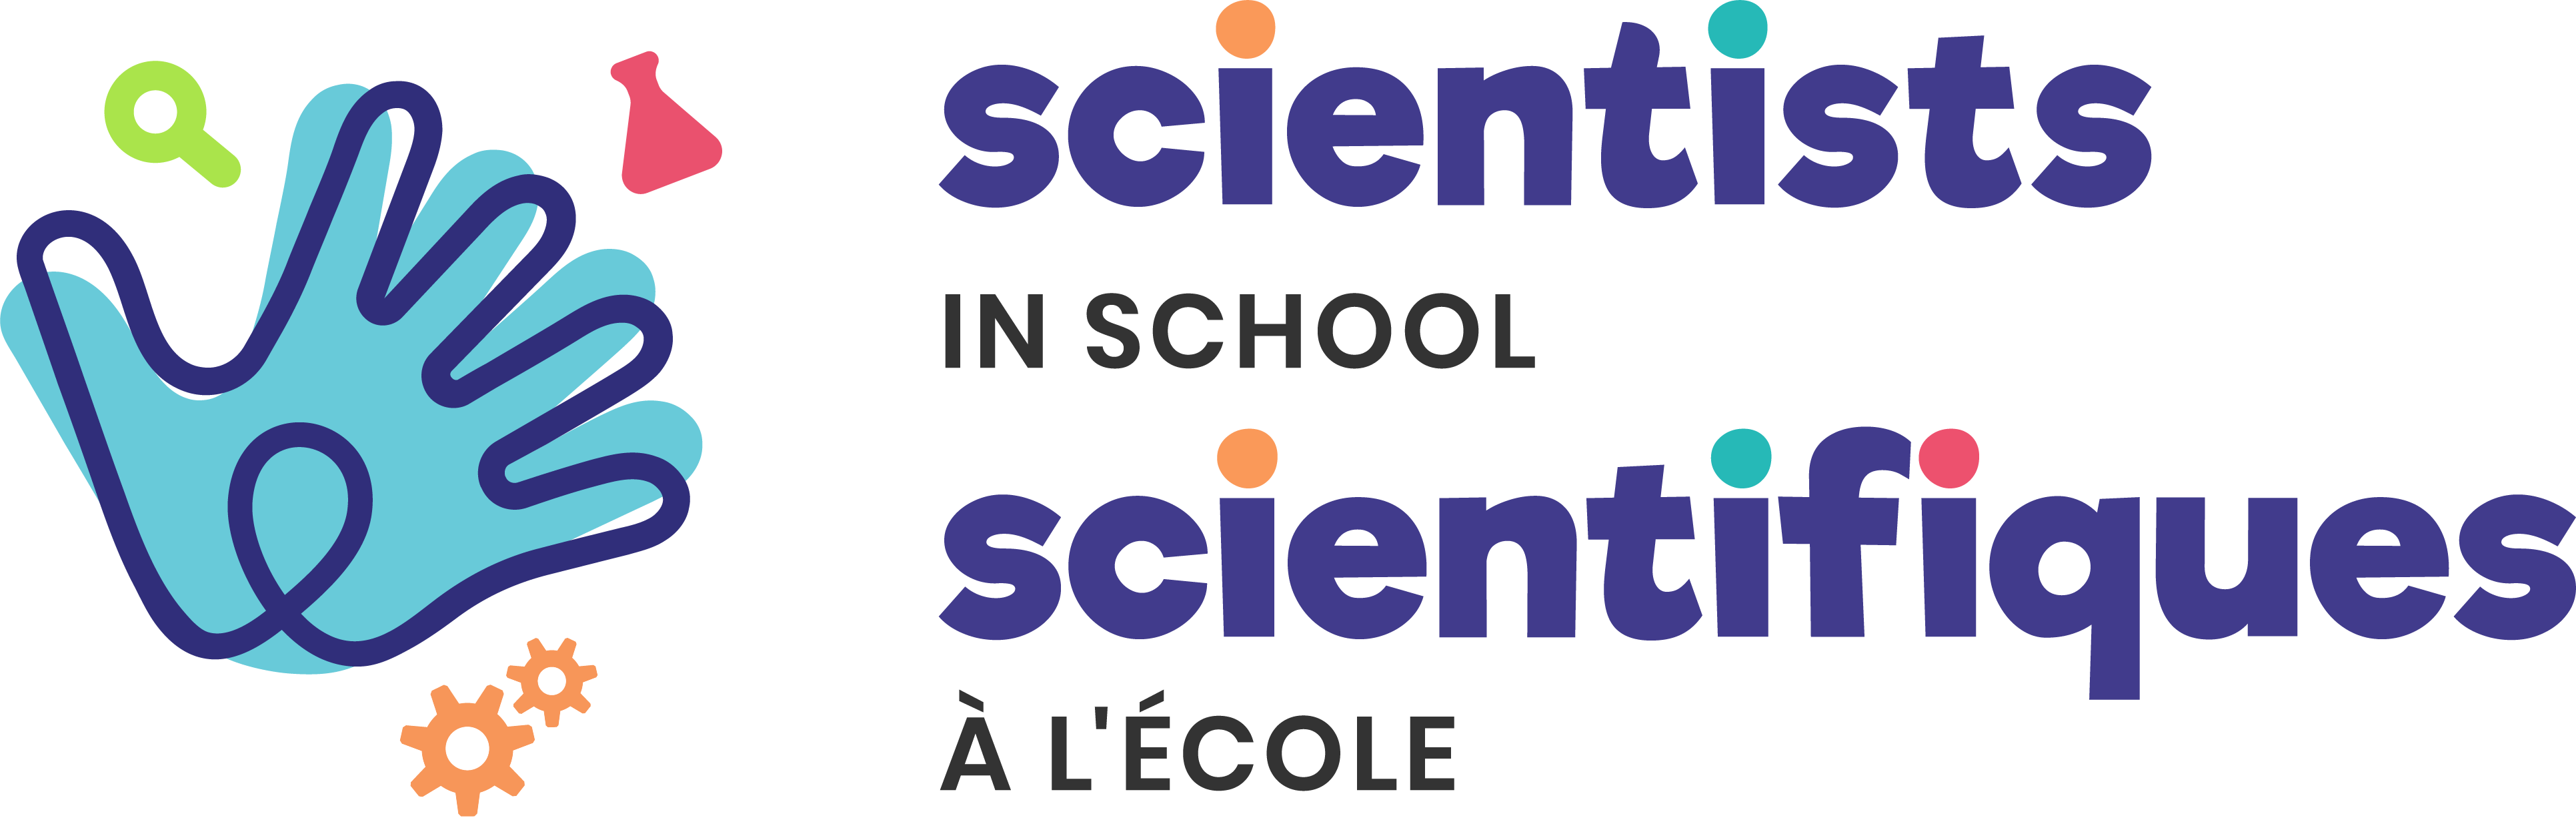 Scientists-in-School